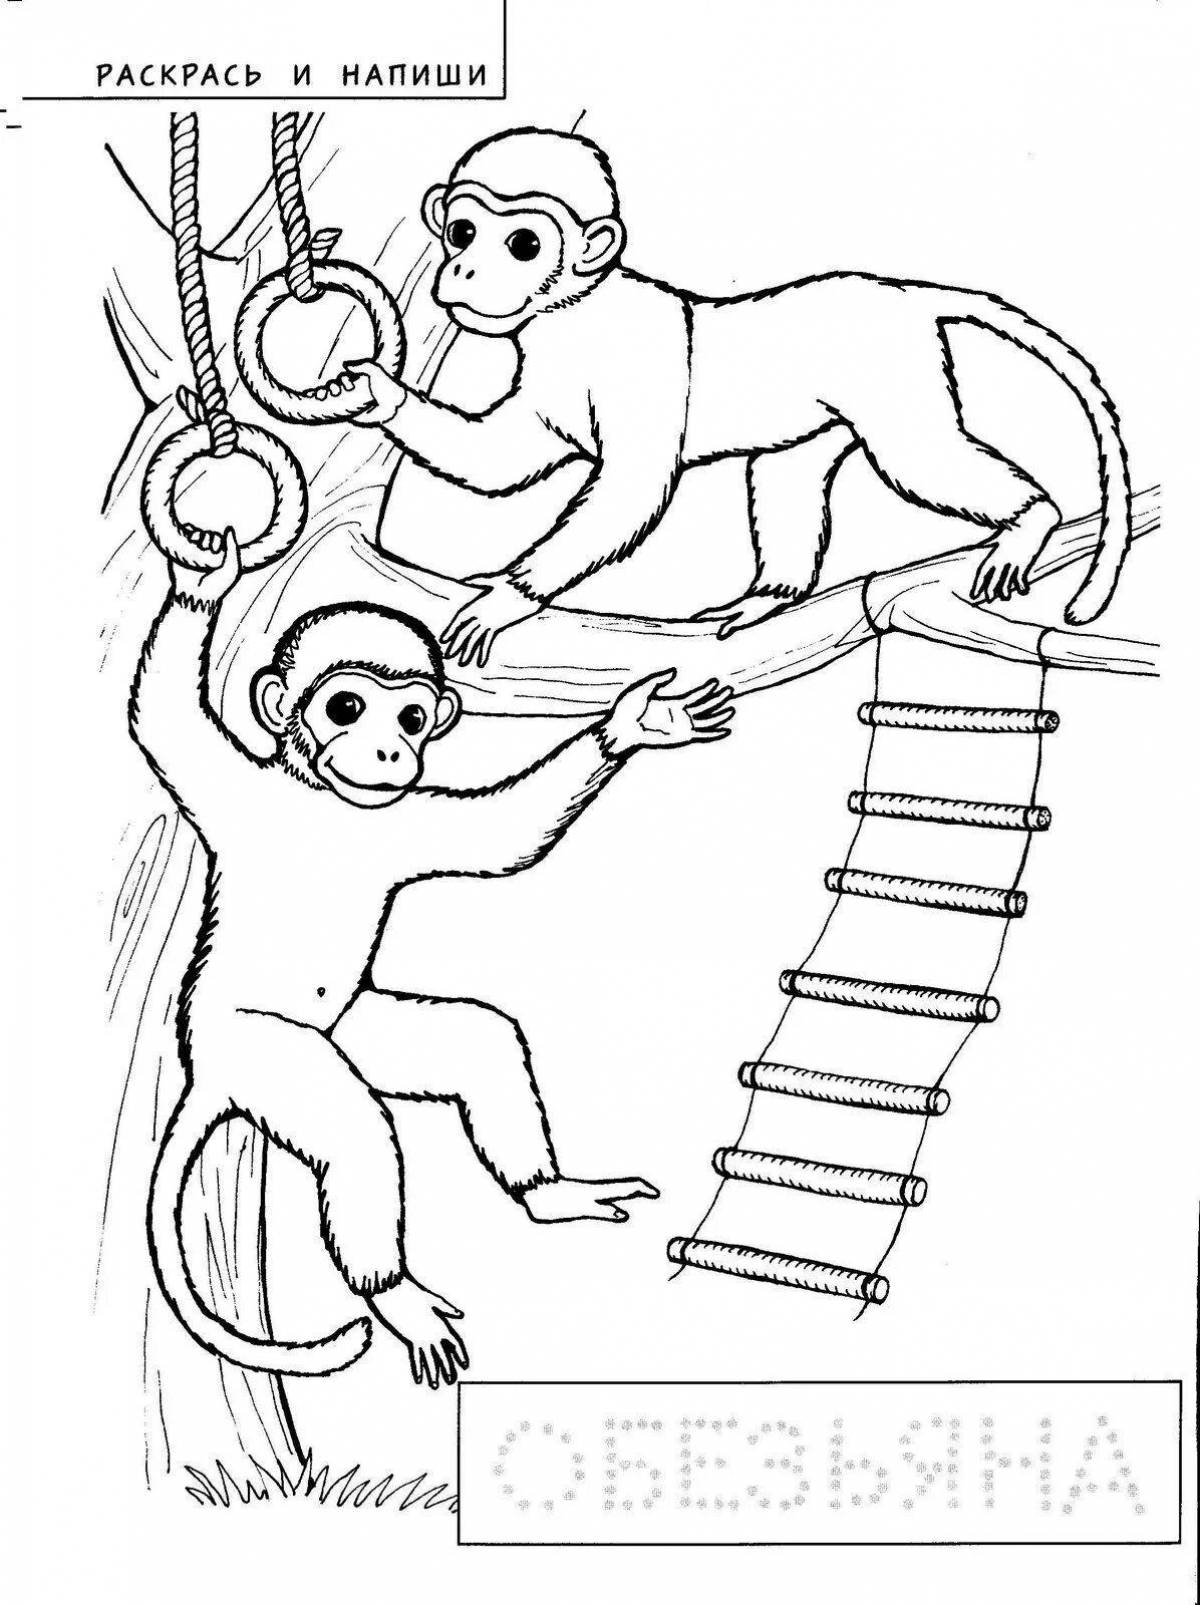 Житков про обезьянку какая обезьянка. Раскраска к произведению про обезьянку. Про обезьянку Житков раскраска. Раскраска к произведению Житкова про обезьянку. Иллюстрация к произведению про обезьянку.